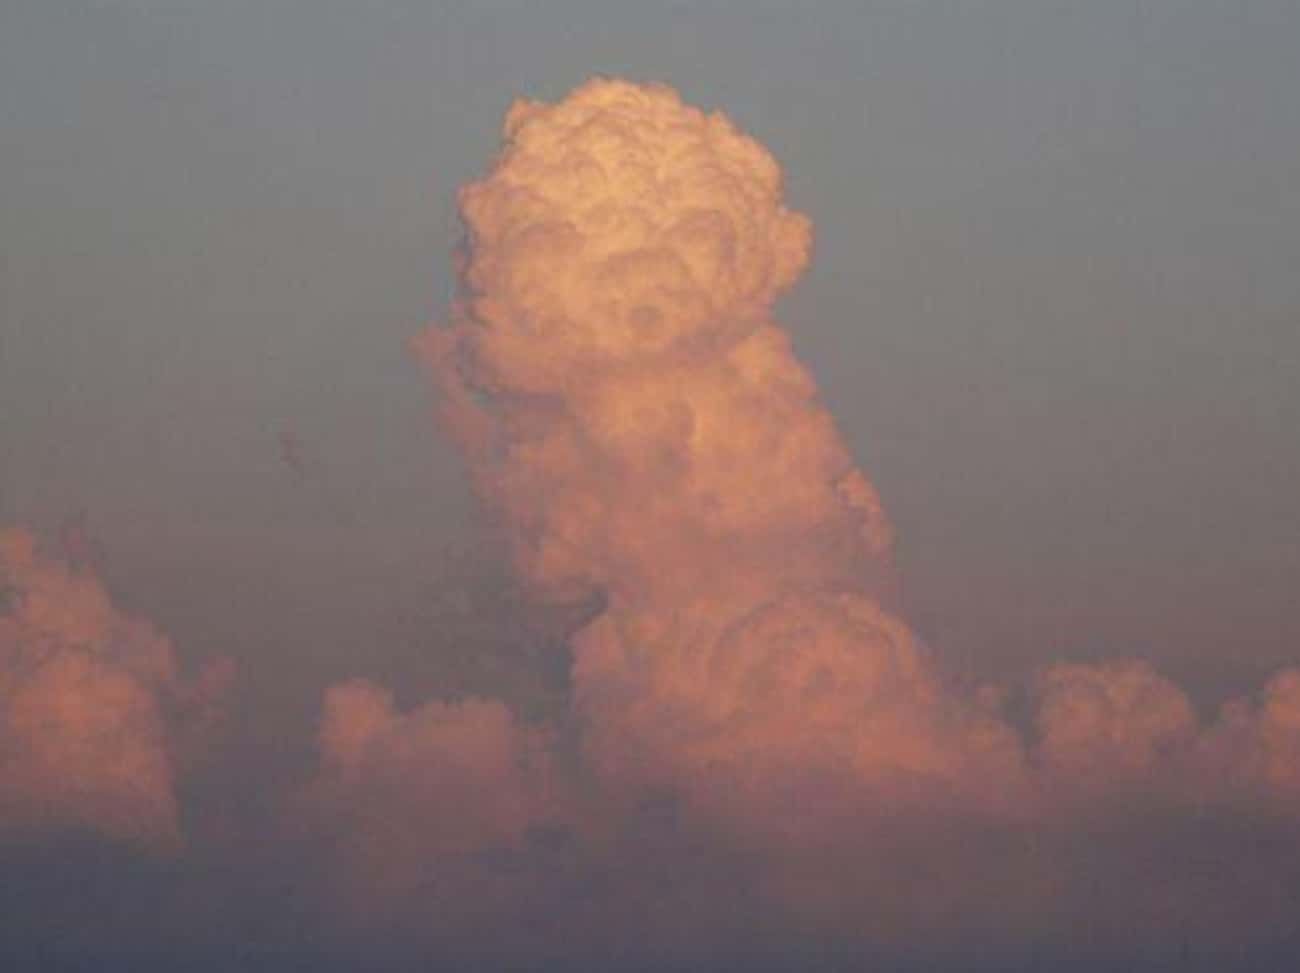 Look at those clouds. Облако в виде члена.